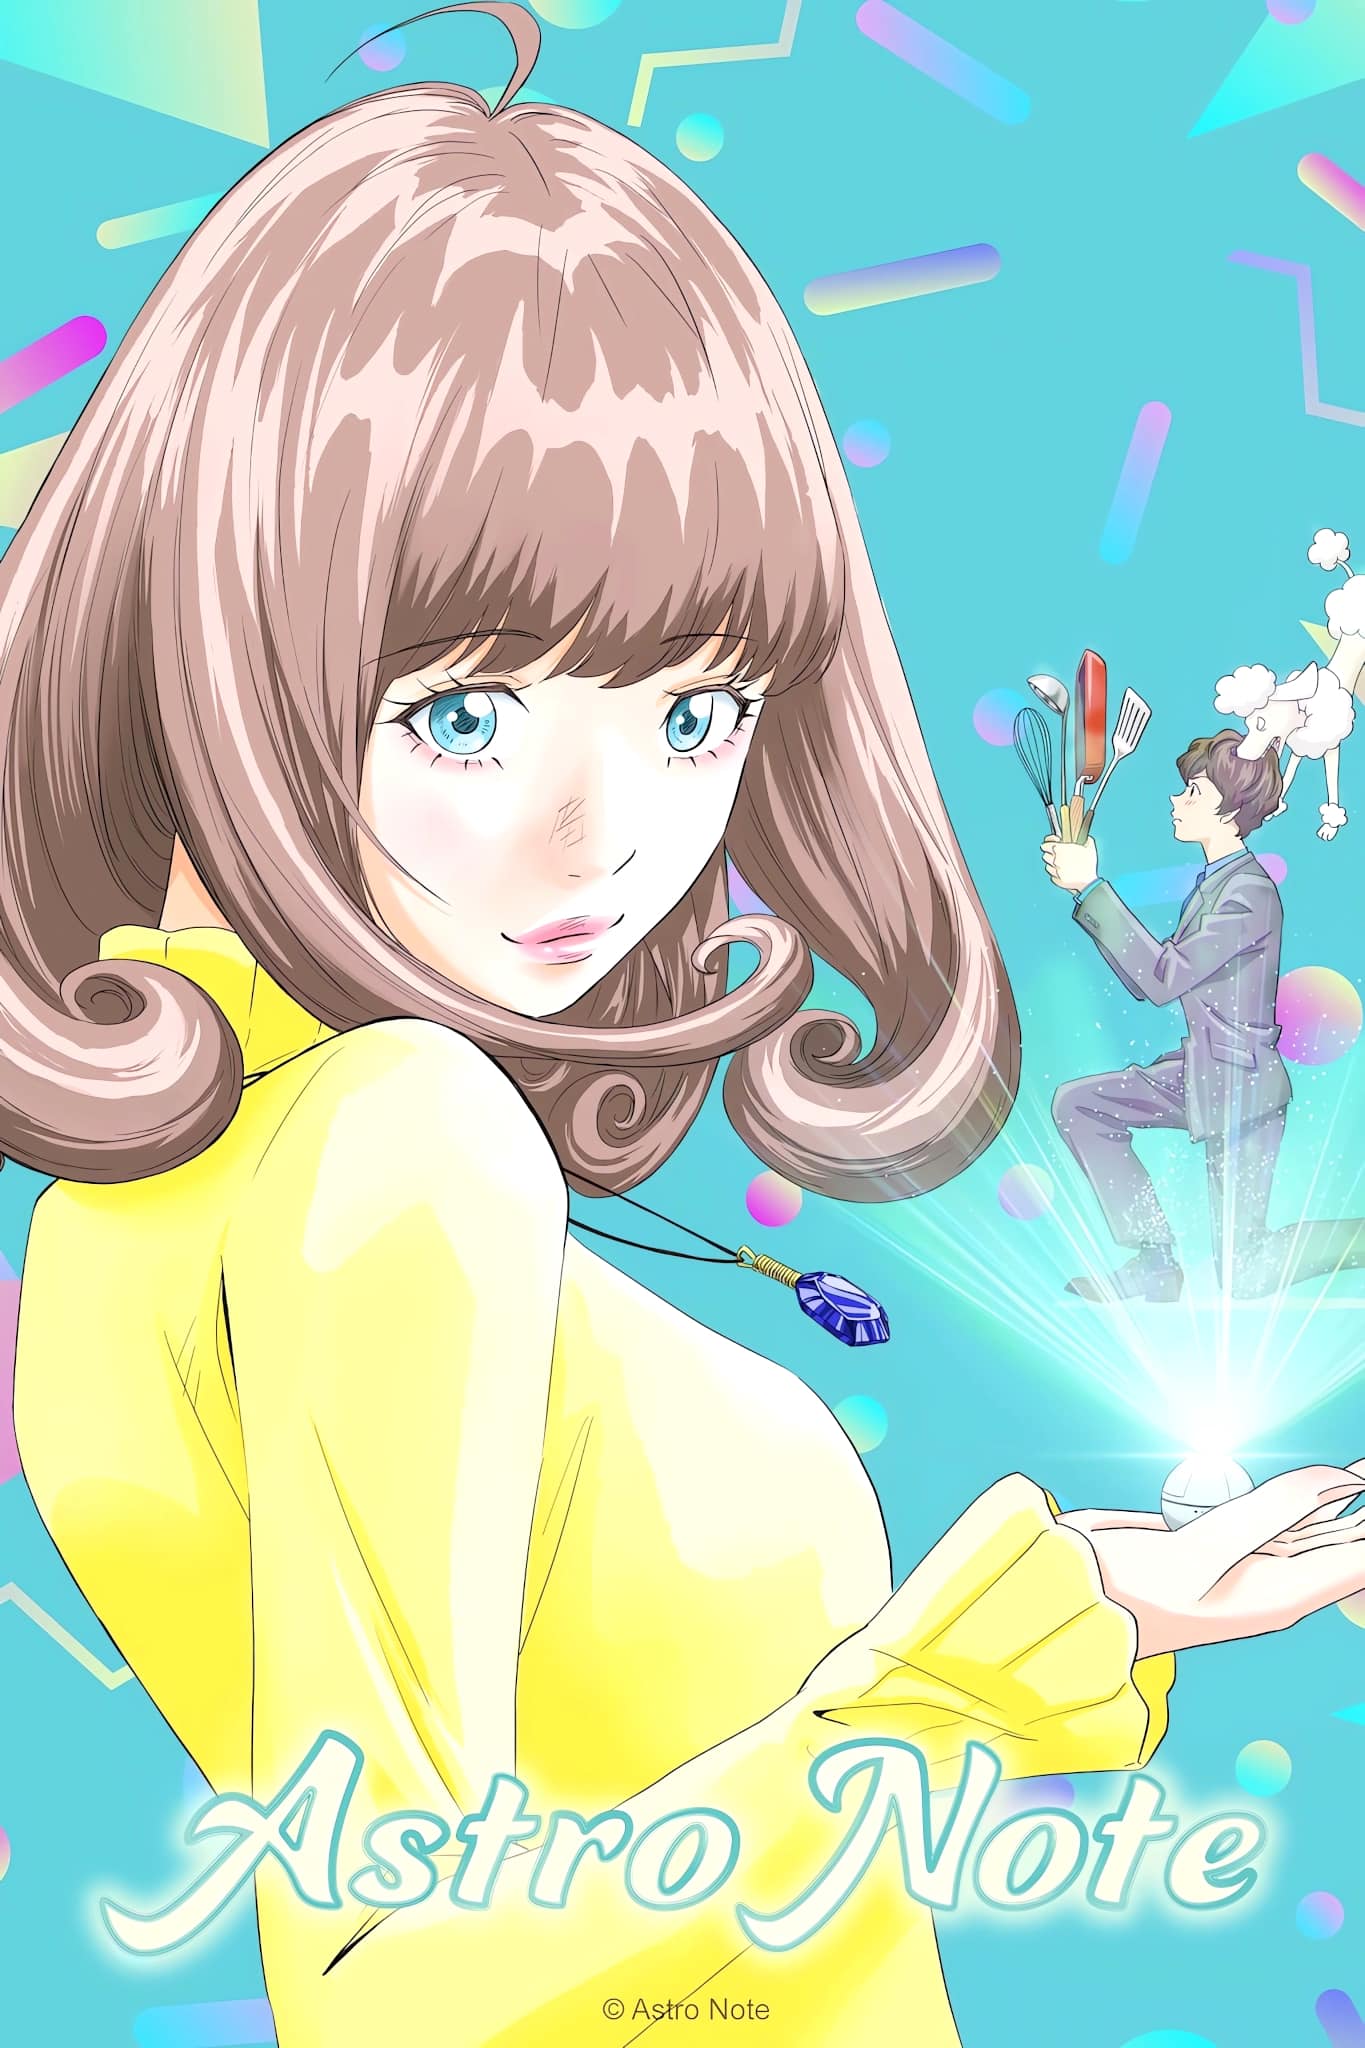 Premier visuel pour l'anime Astro Note